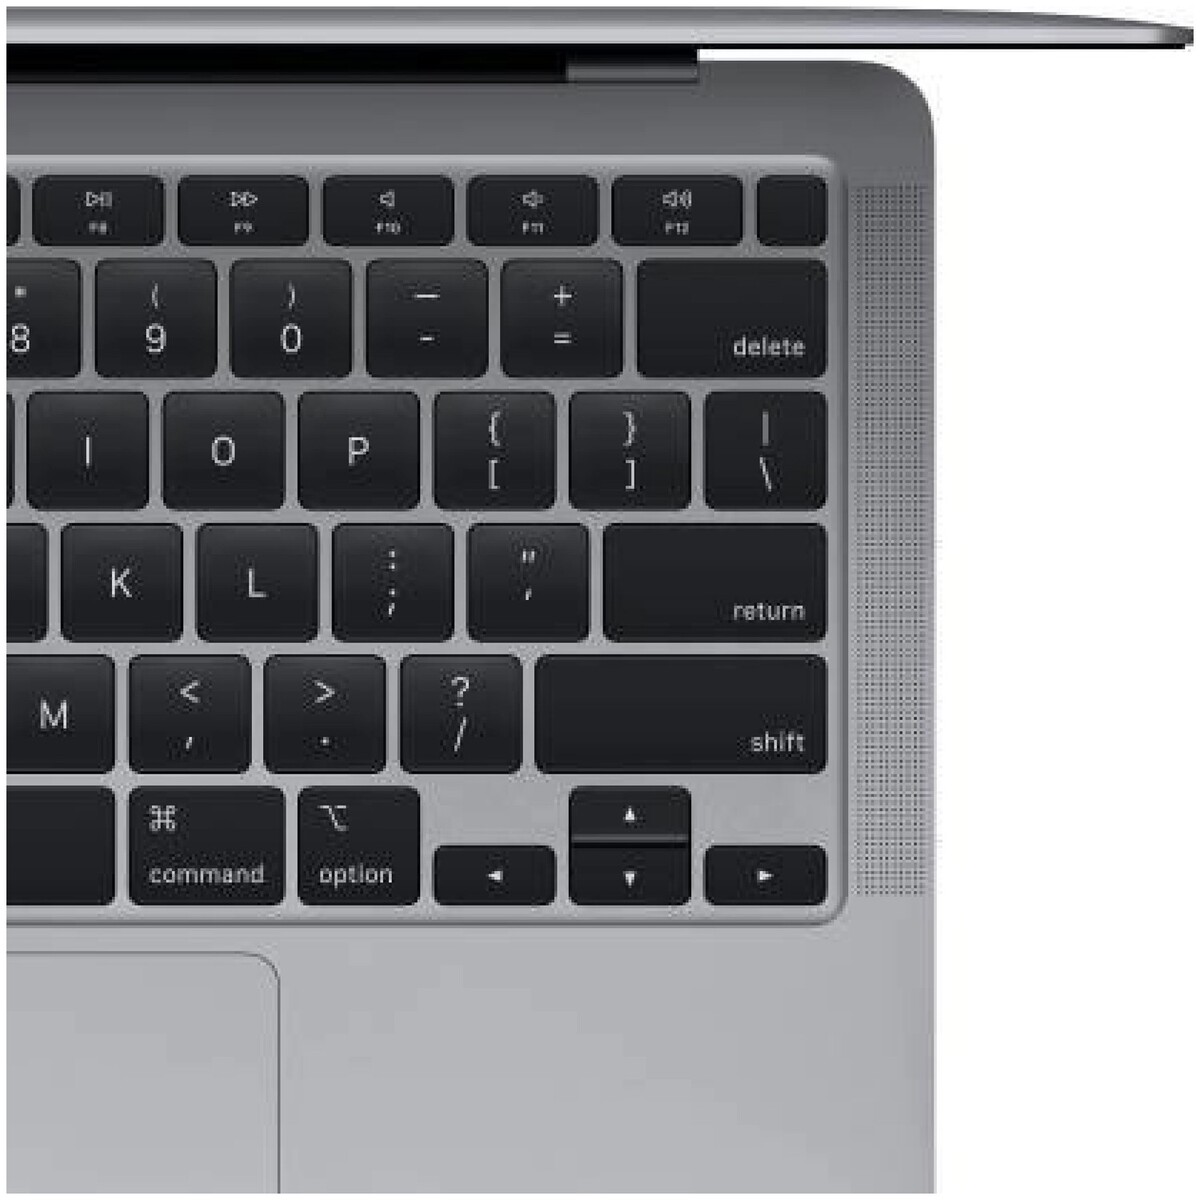 Apple MacBook Air Z12400092 M1 13.3" Space Grey